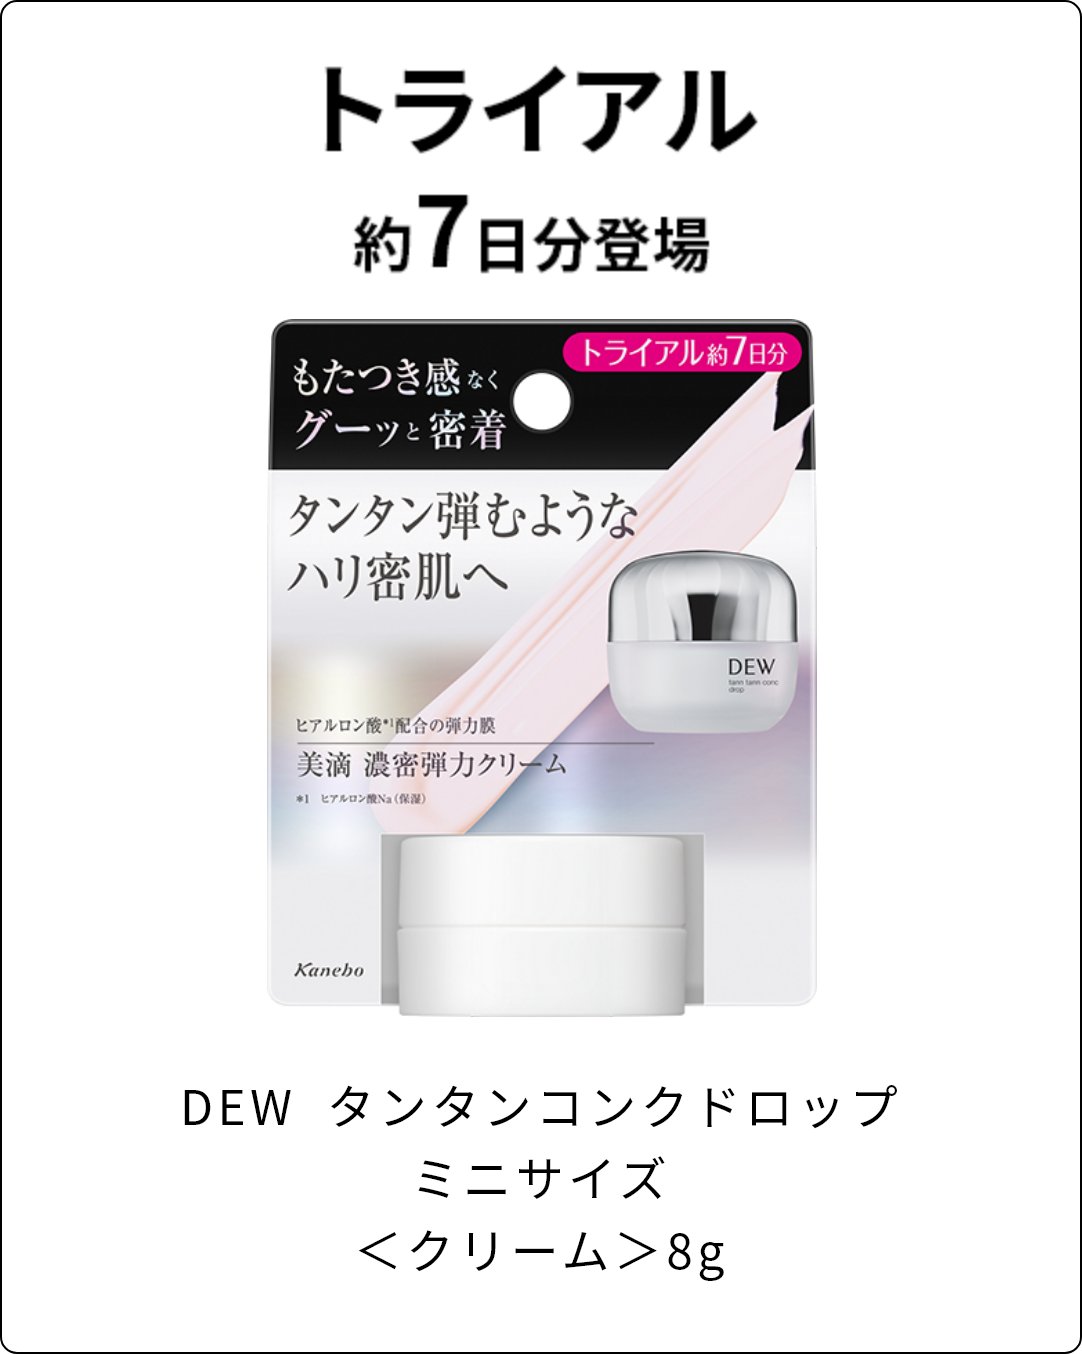 タンタンコンクドロップ | DEW Advanced Line | カネボウ化粧品